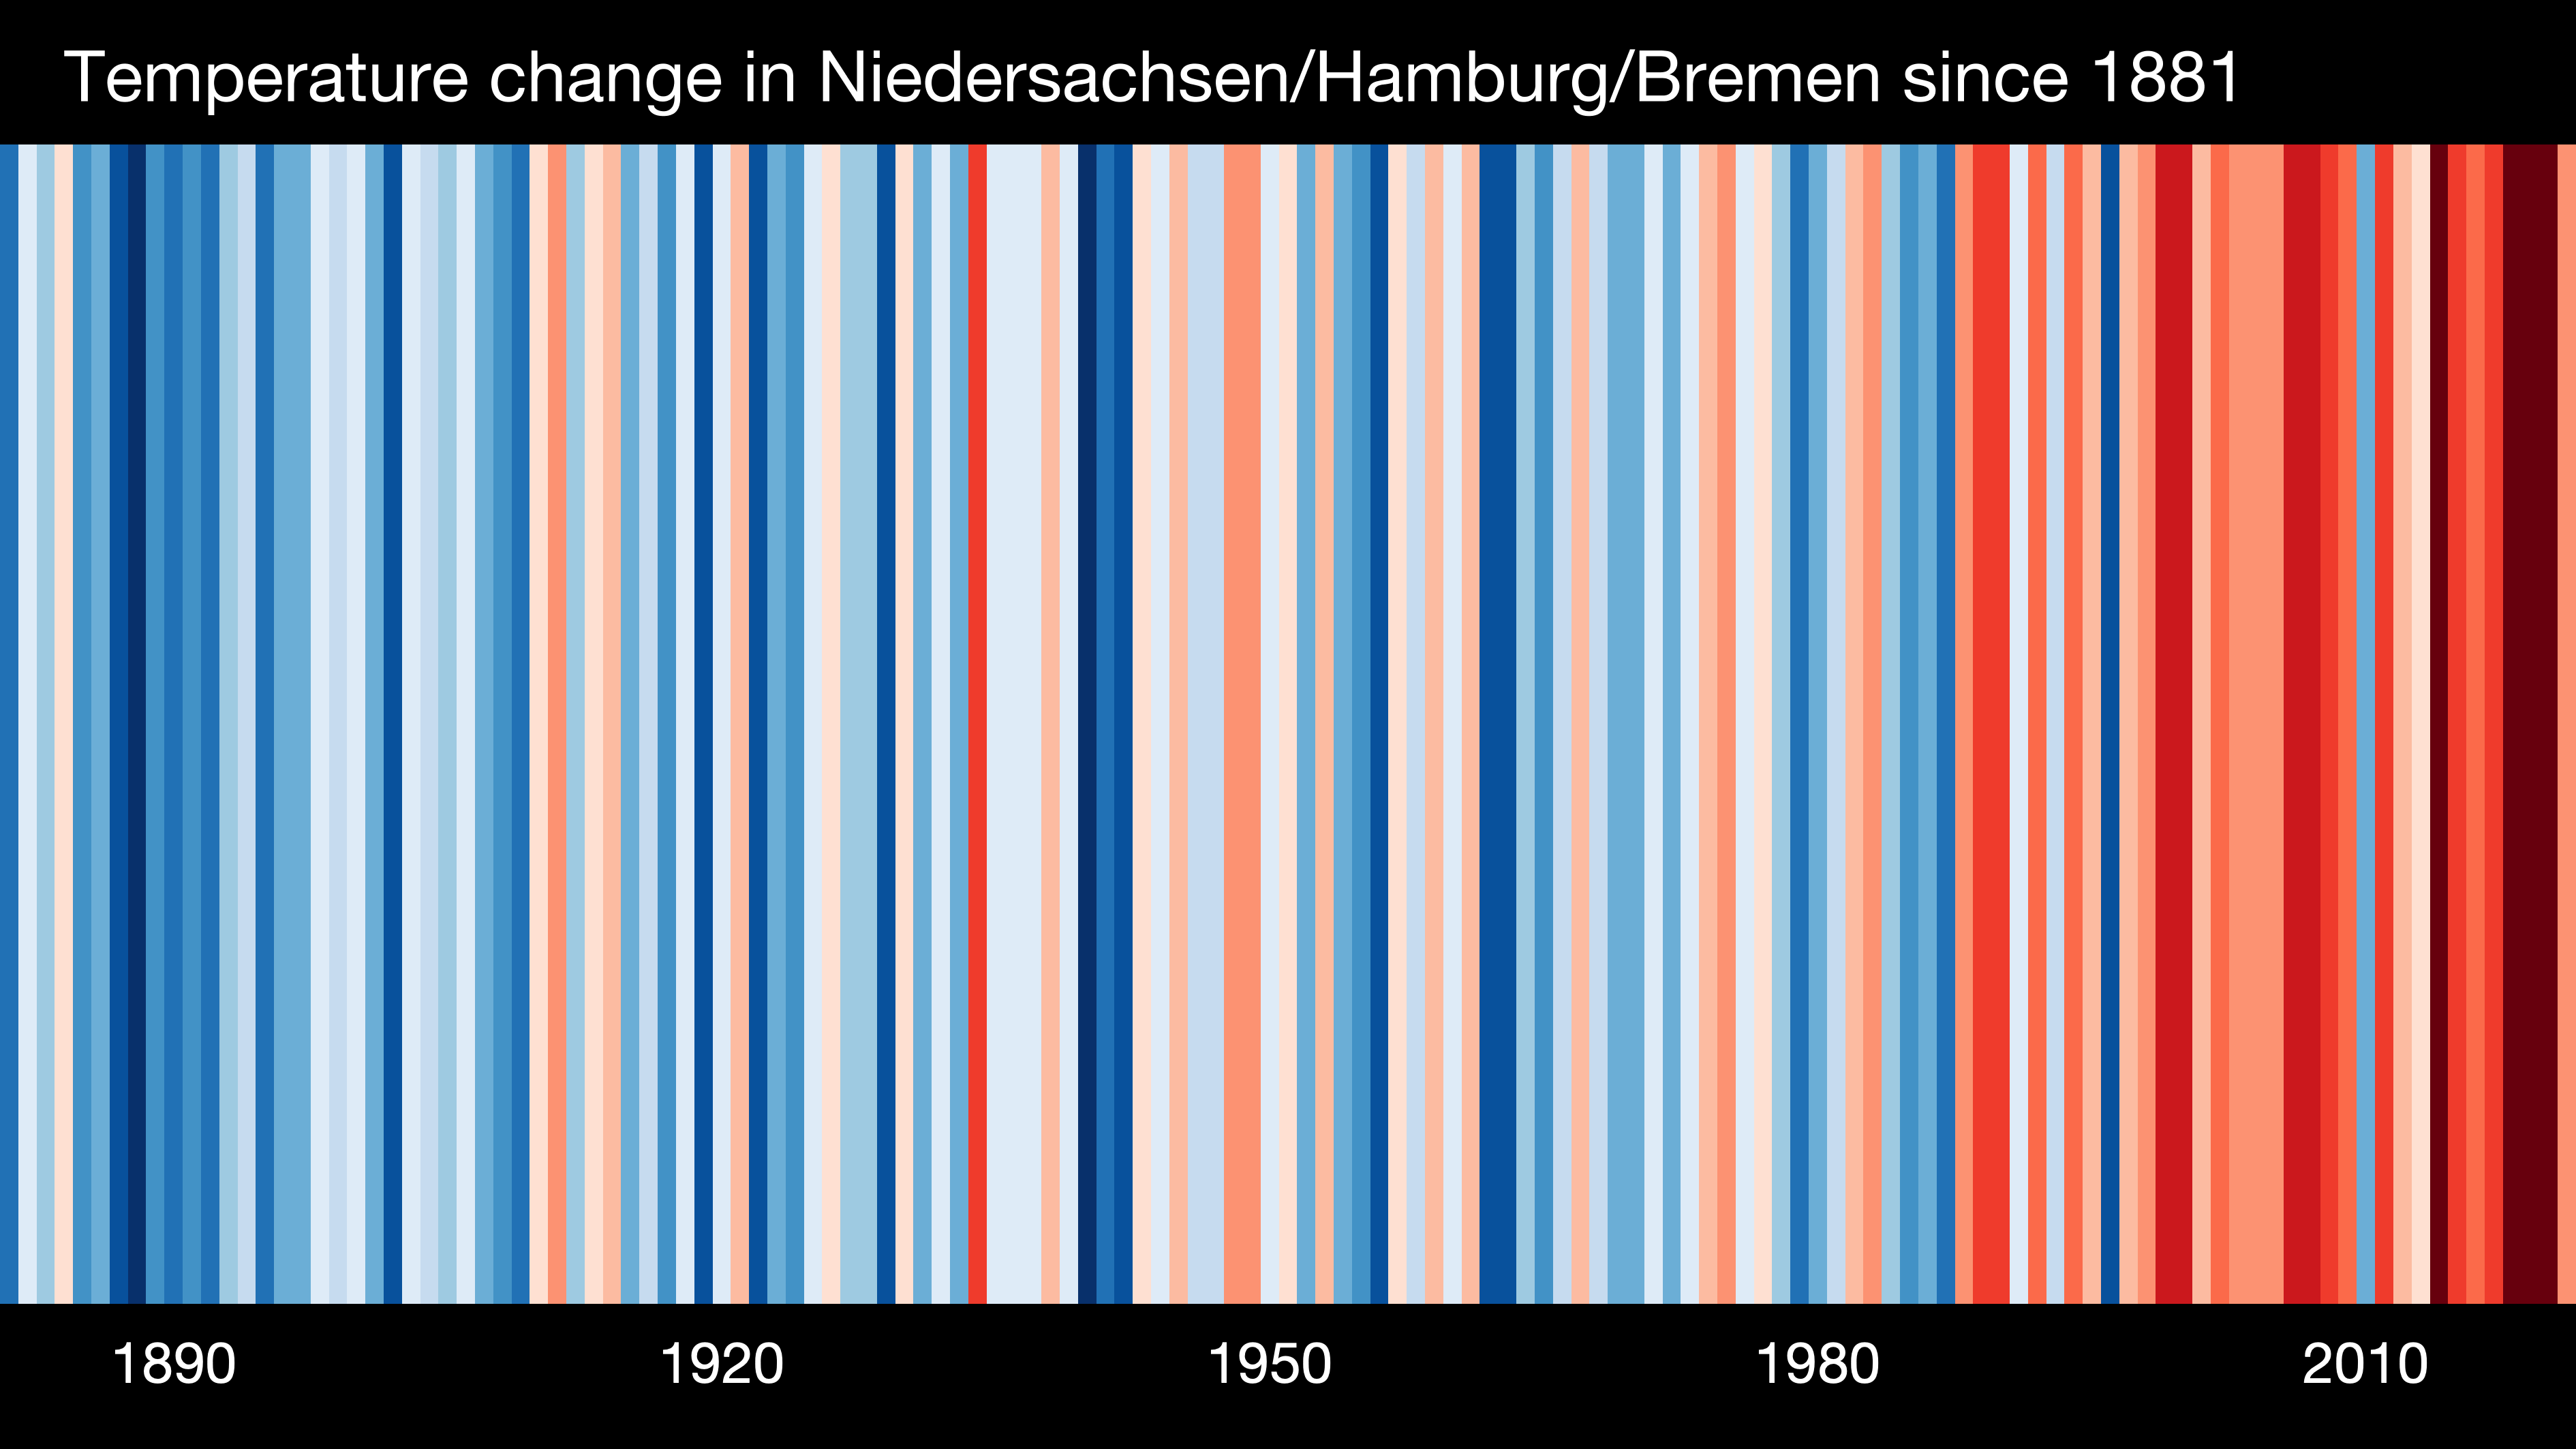 Die Klimakrise ist längst auch in Bremen angekommen. Hier zu sehen sind die "Warming stripes" für Bremen und umzu. Jeder Streifen steht für ein Jahr. Blau sind die Jahre, die kälter waren als der Durchschnitt. Rot bedeutet wärmer als der Durchschnitt. Es ist eindeutig, es wird wärmer.Bild: Deutsches Klima Konsortium